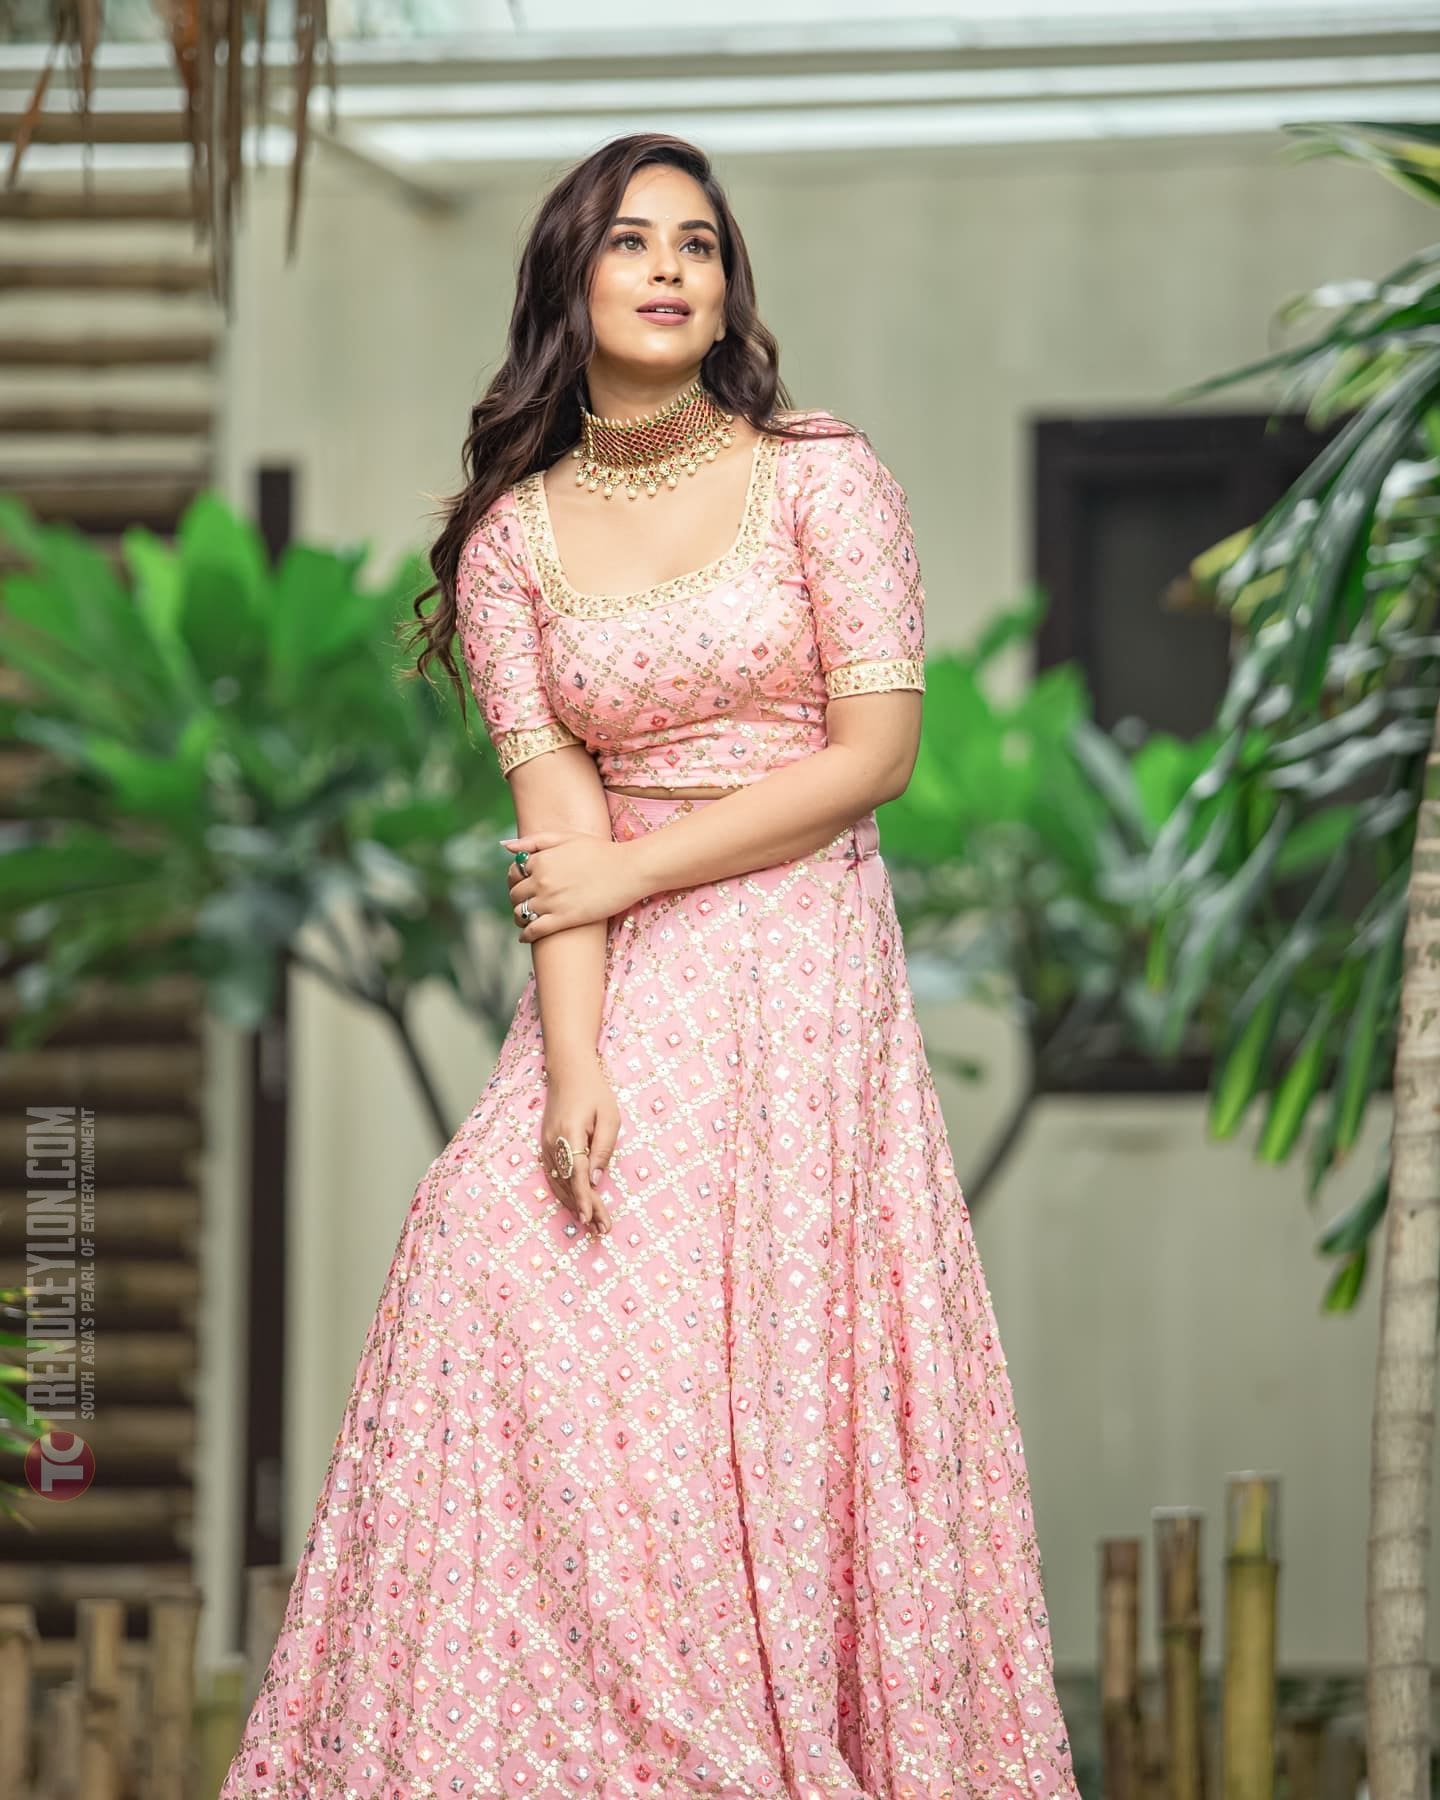 Television actress Kanmani Manoharan looks beautiful in cotton saree